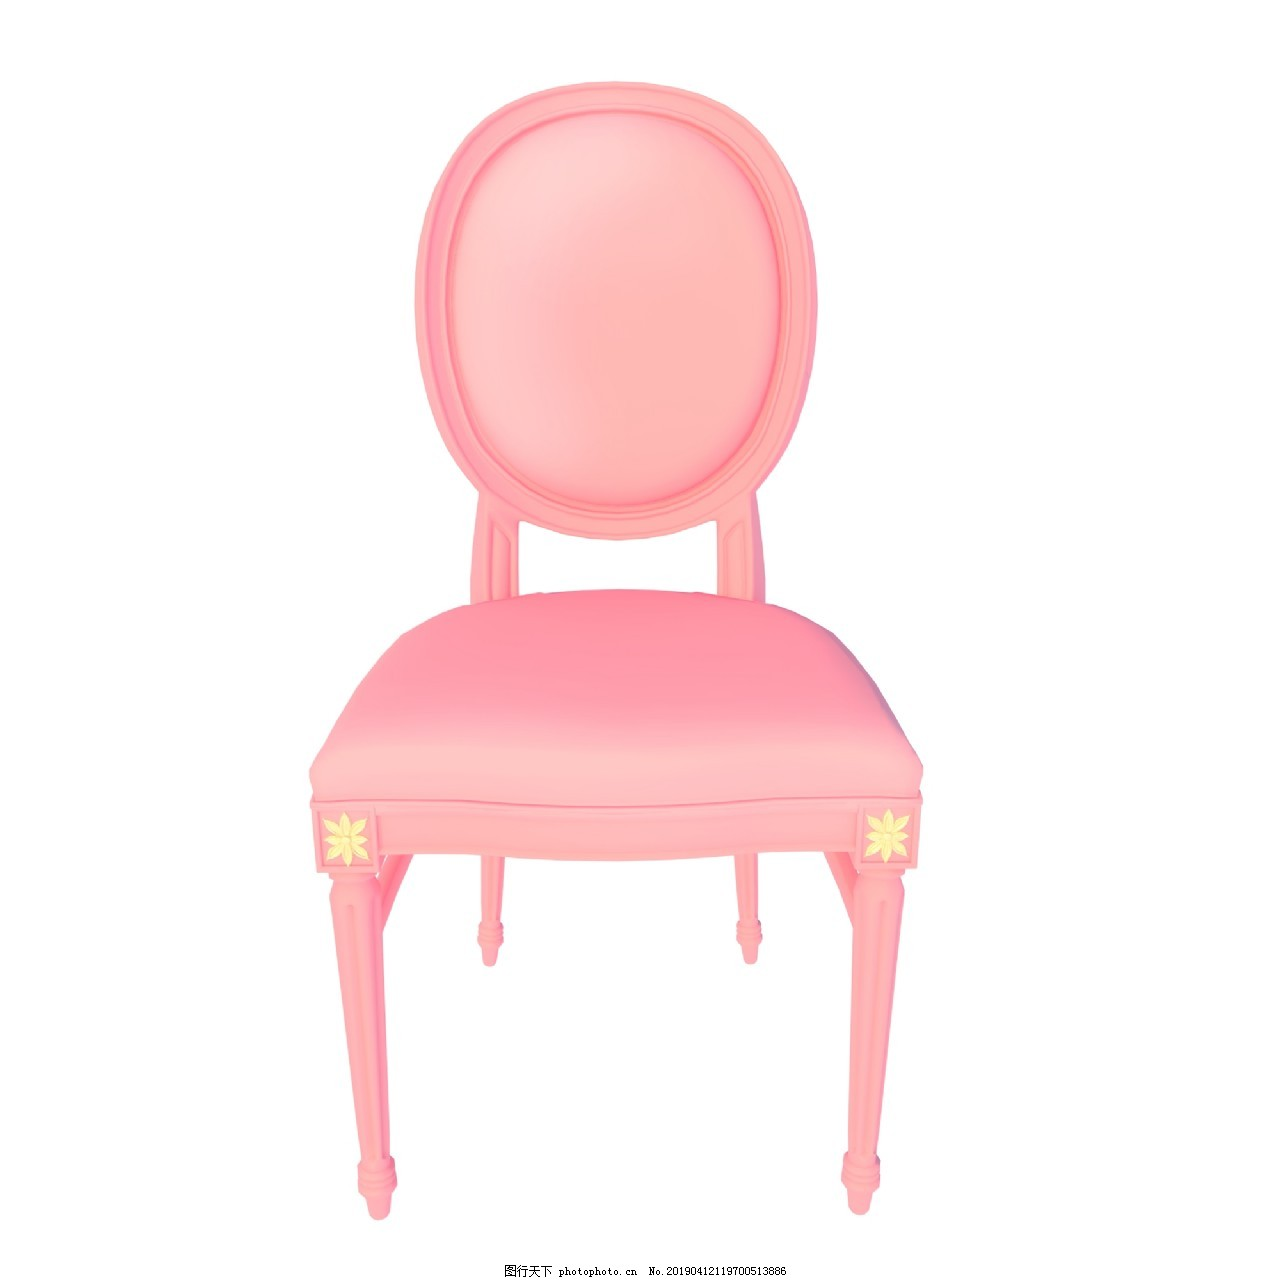 ‘~粉色家用椅子图片_装饰图案_平面创作元素-  ~’ 的图片